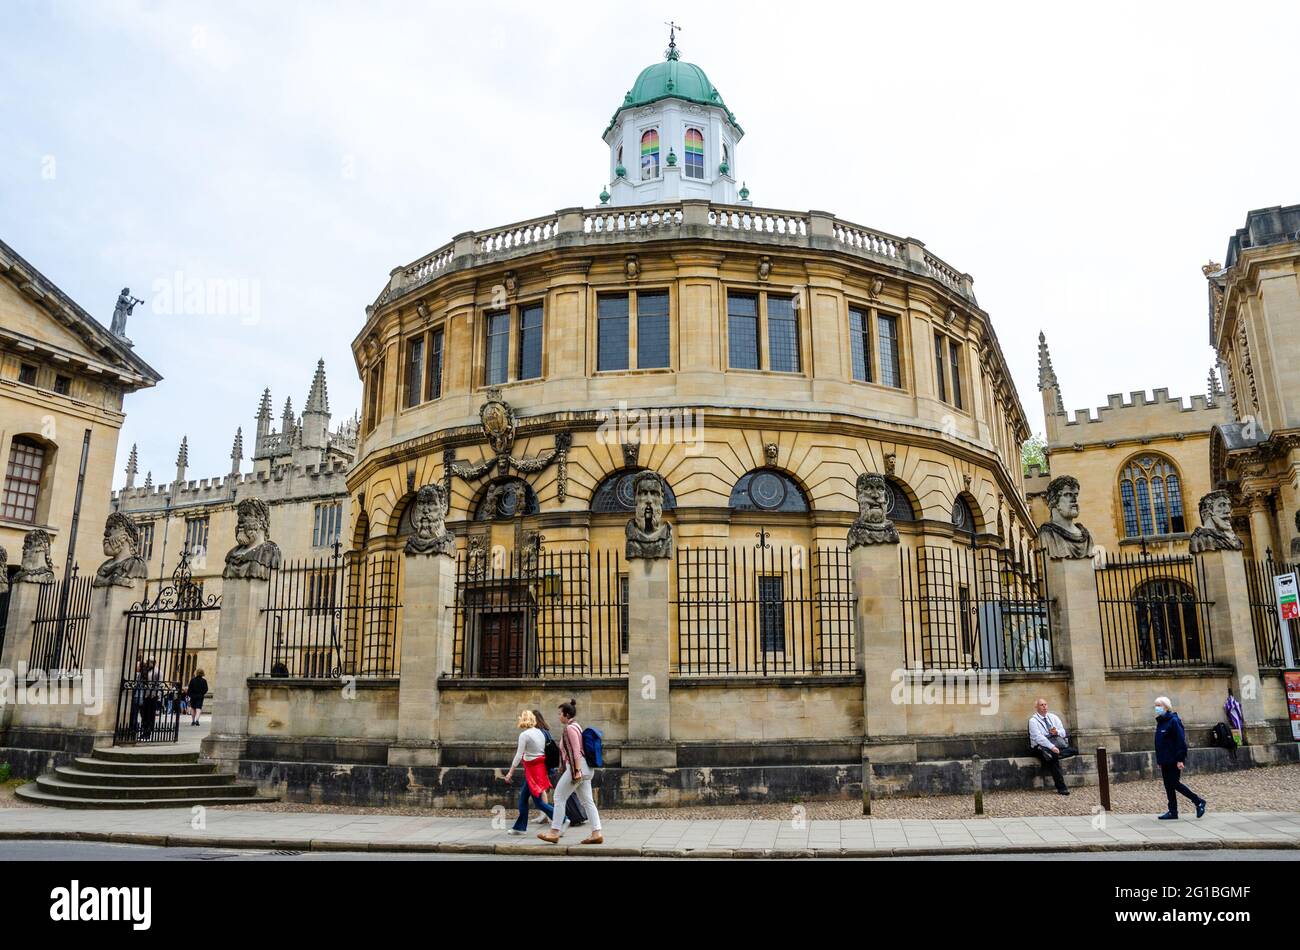 Le Sheldon Theatre conçu par Sir Christopher Wren pour l'Université d'Oxford construit avec des stands en grès jaune sur Broad Street à Oxford, Royaume-Uni Banque D'Images